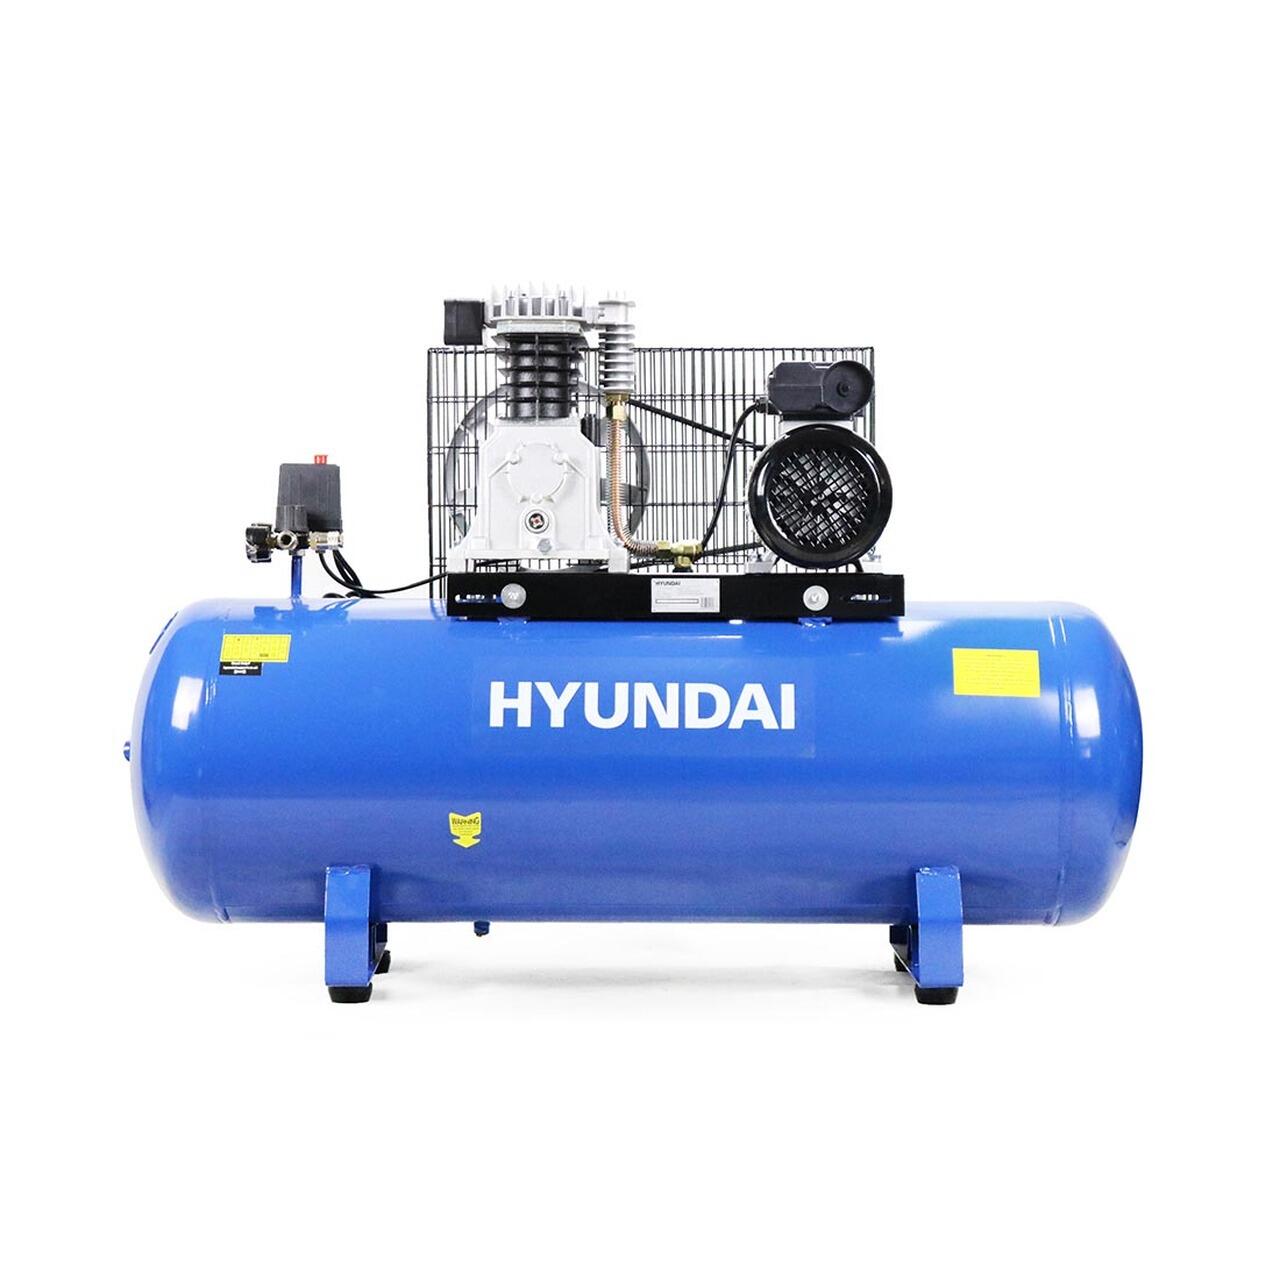 HY3150S 150L air compressor